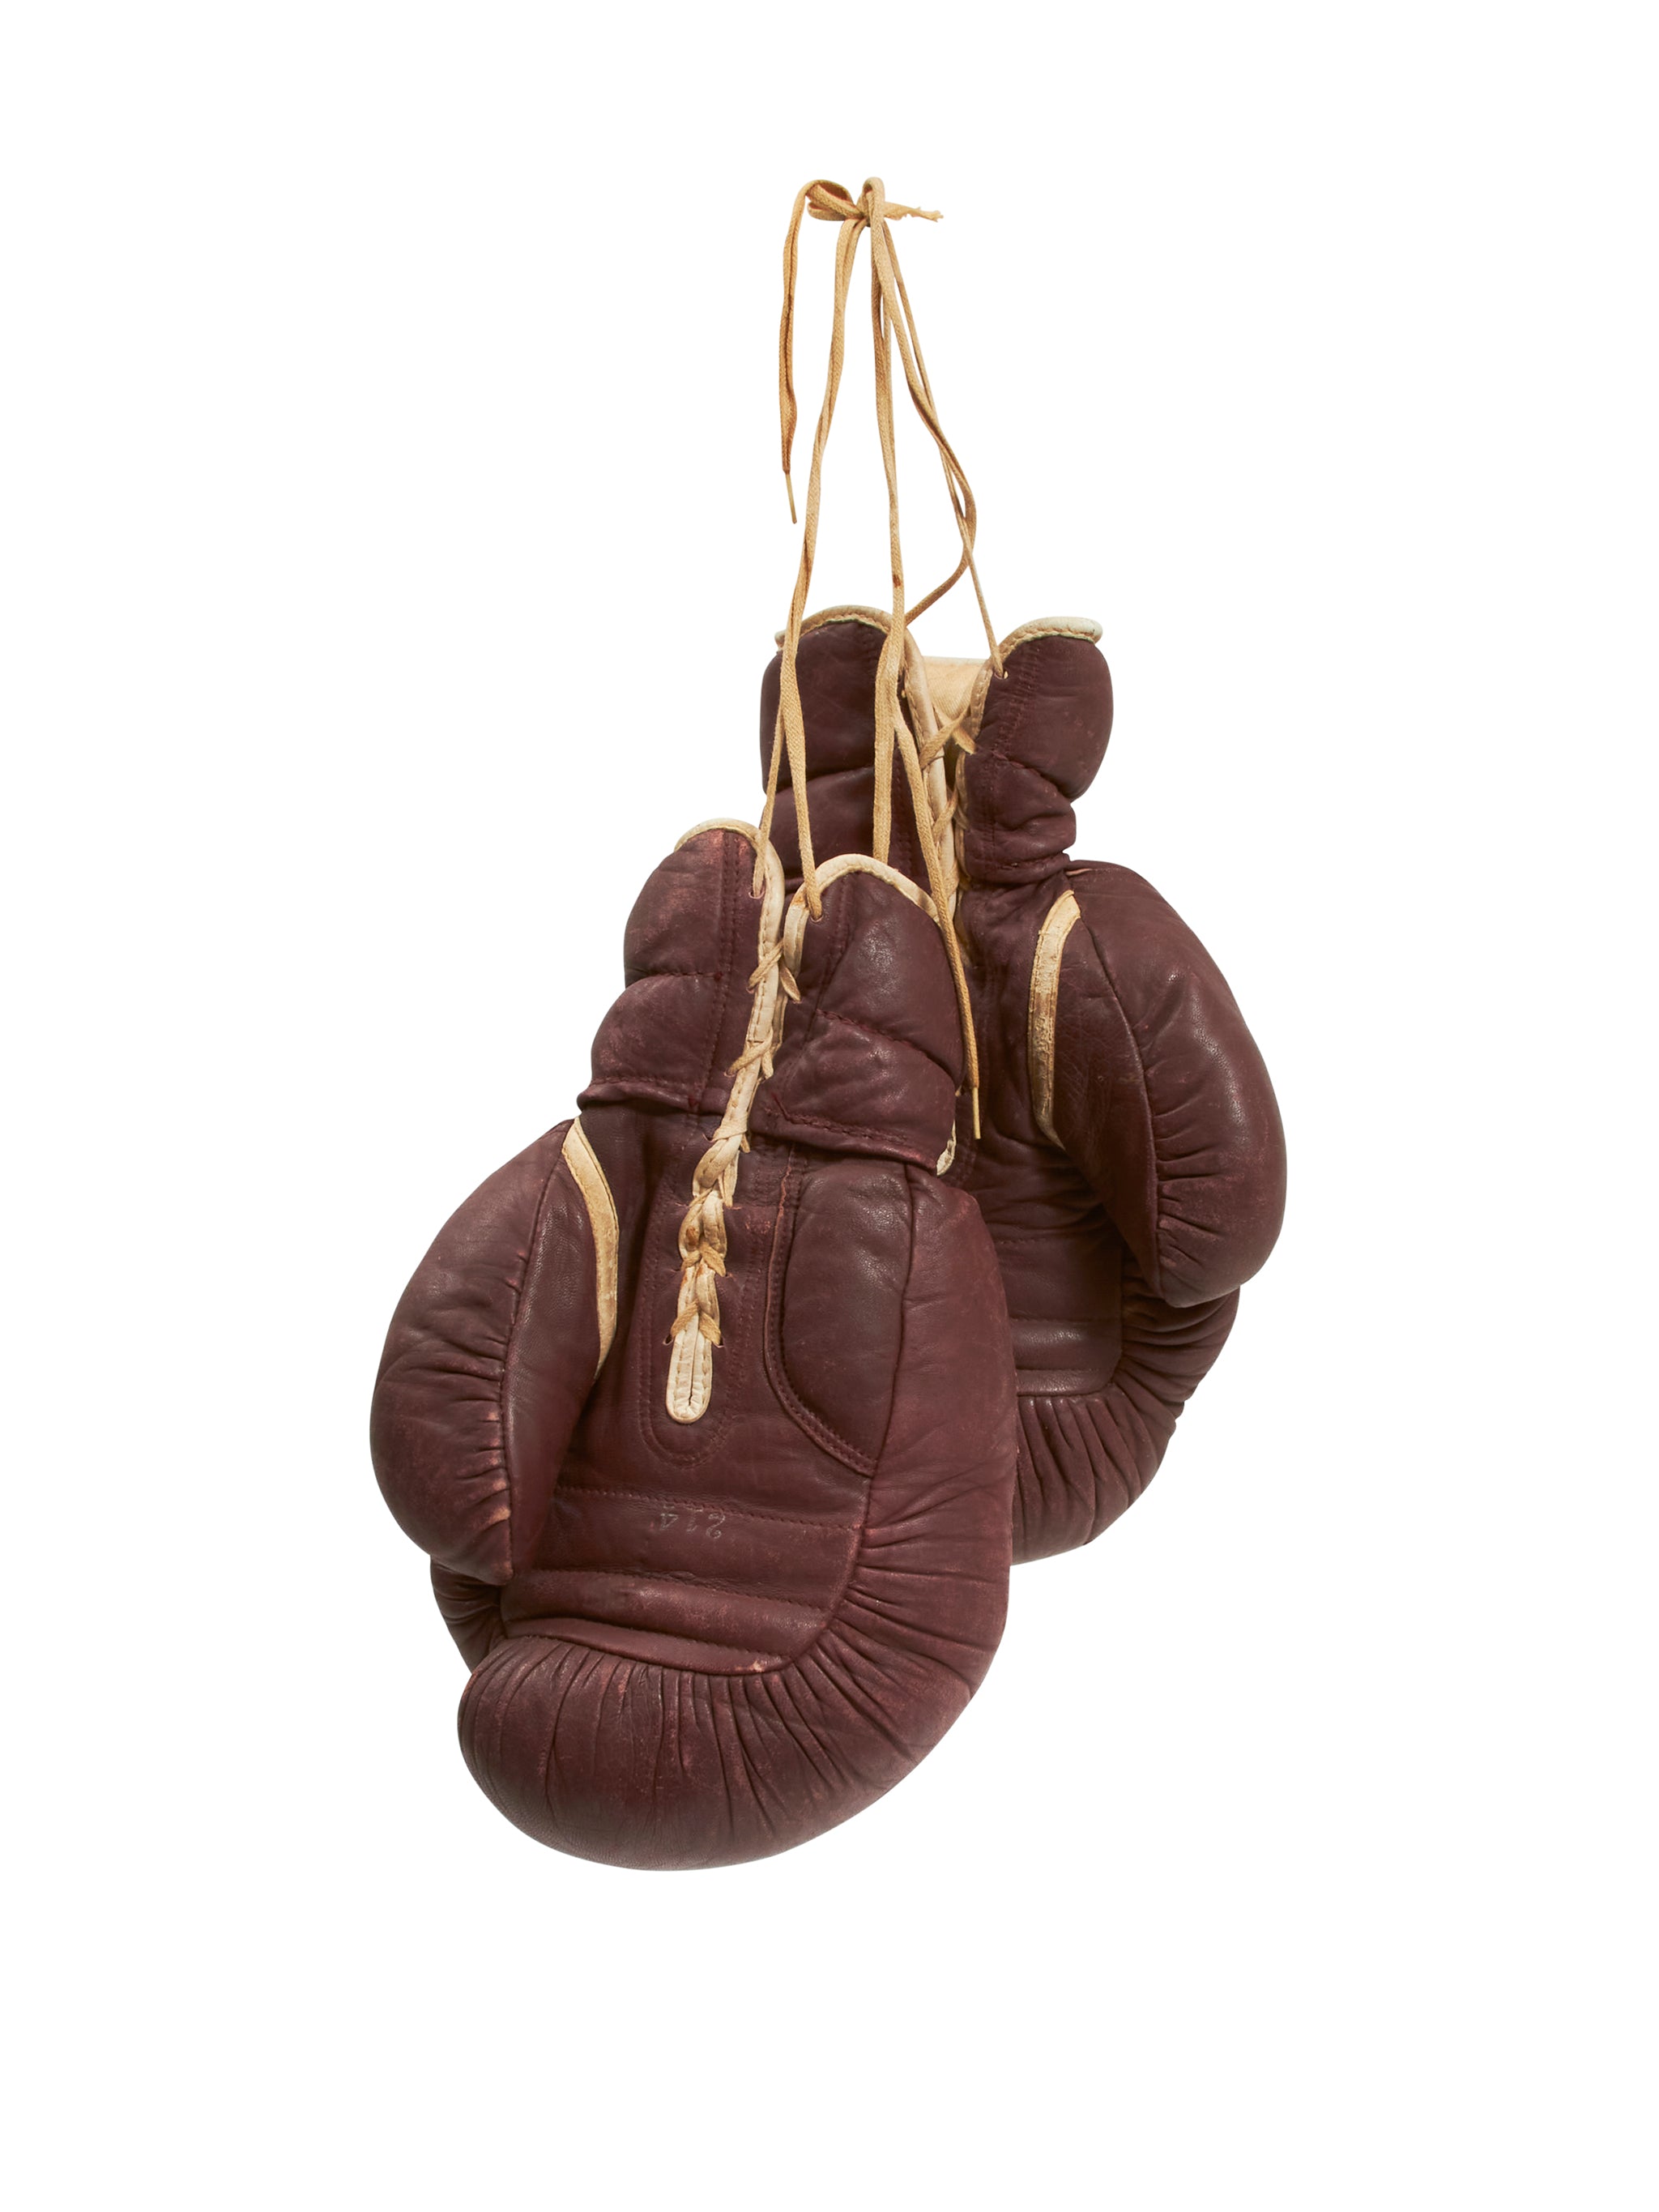 Vintage 1950s Boxing Gloves